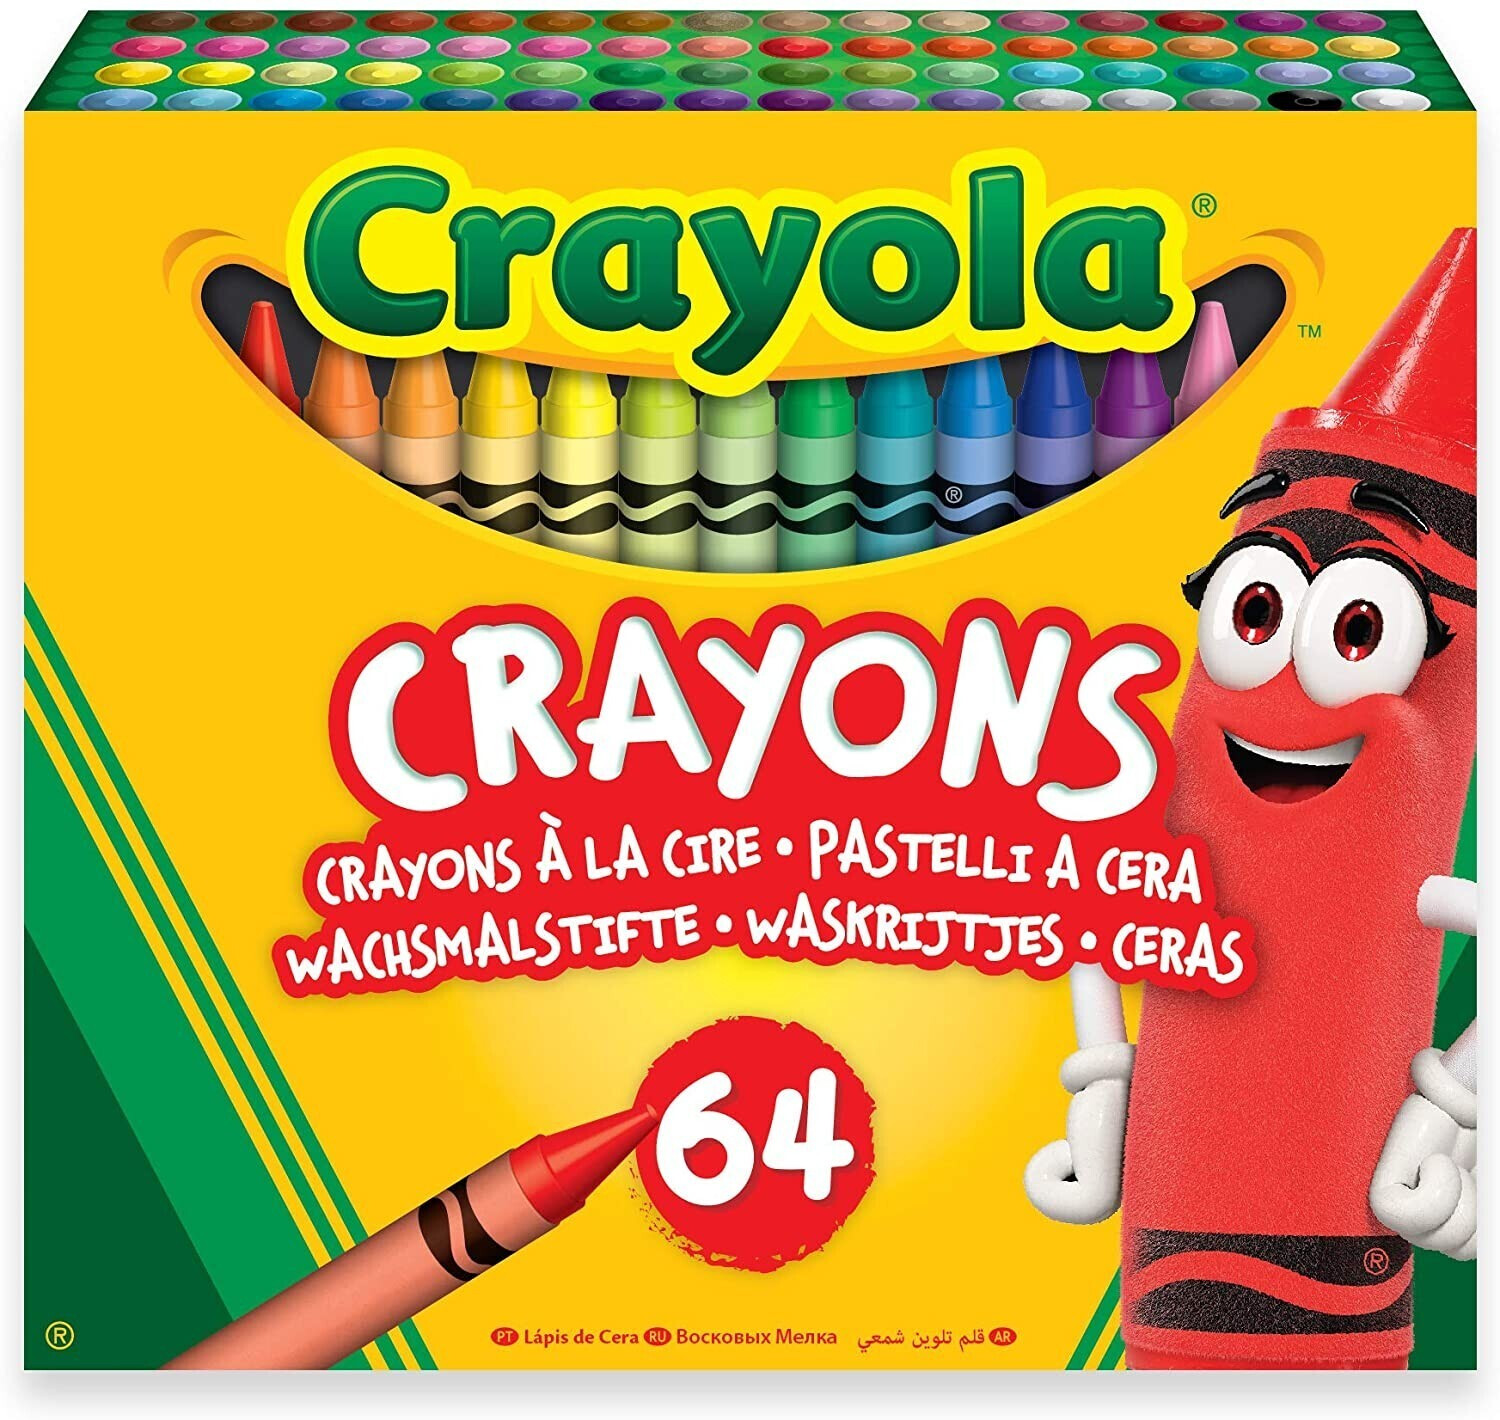 SODISE - Craie grasse en forme de crayon - 08764